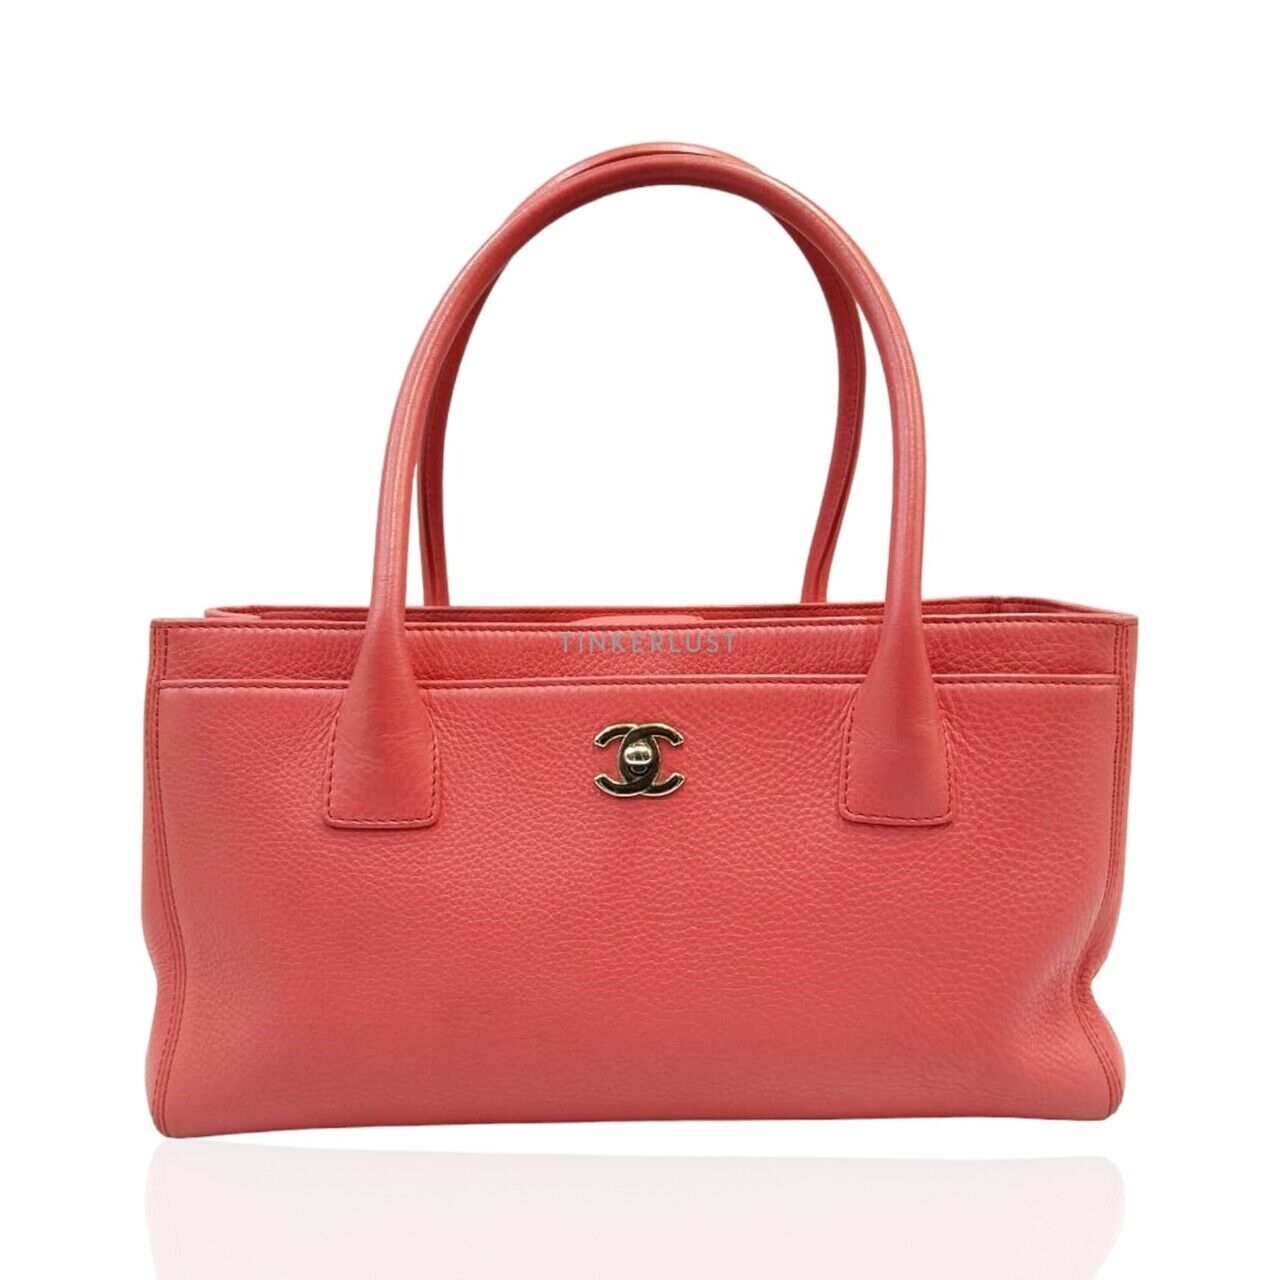 Chanel Executive Pink Salmon She #19 Tote Bag